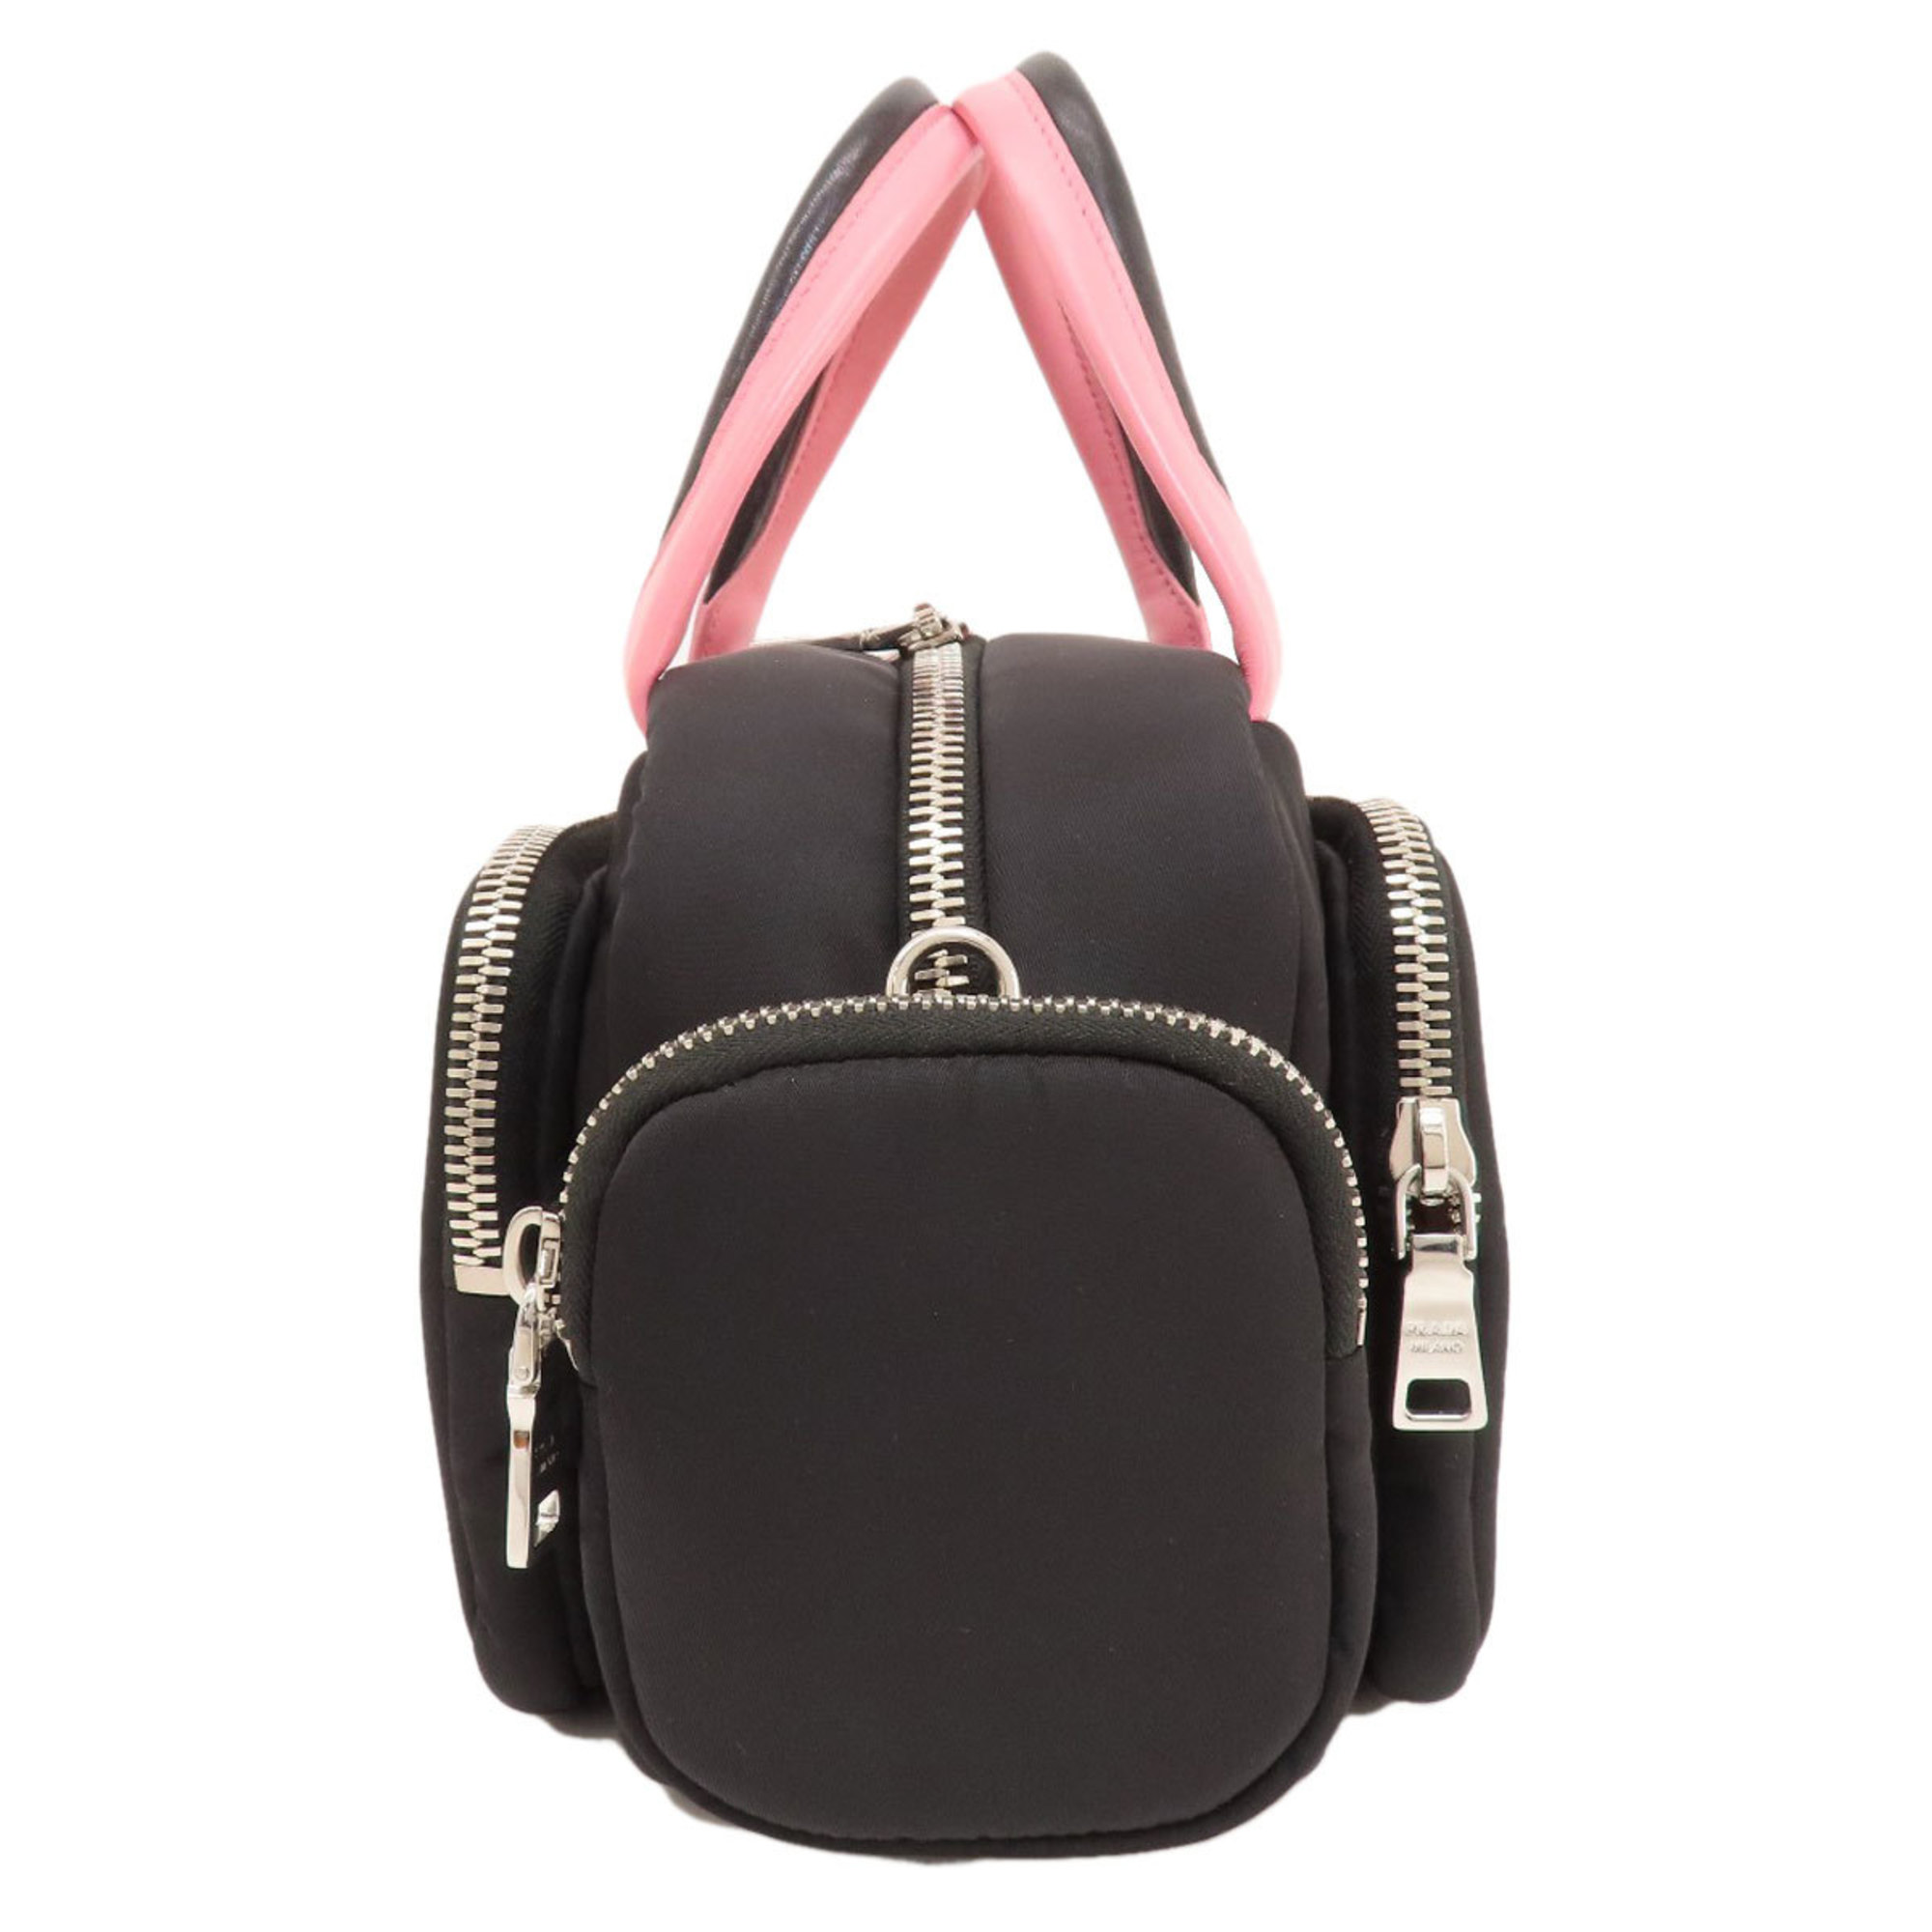 Prada metal handbag nylon material women's PRADA